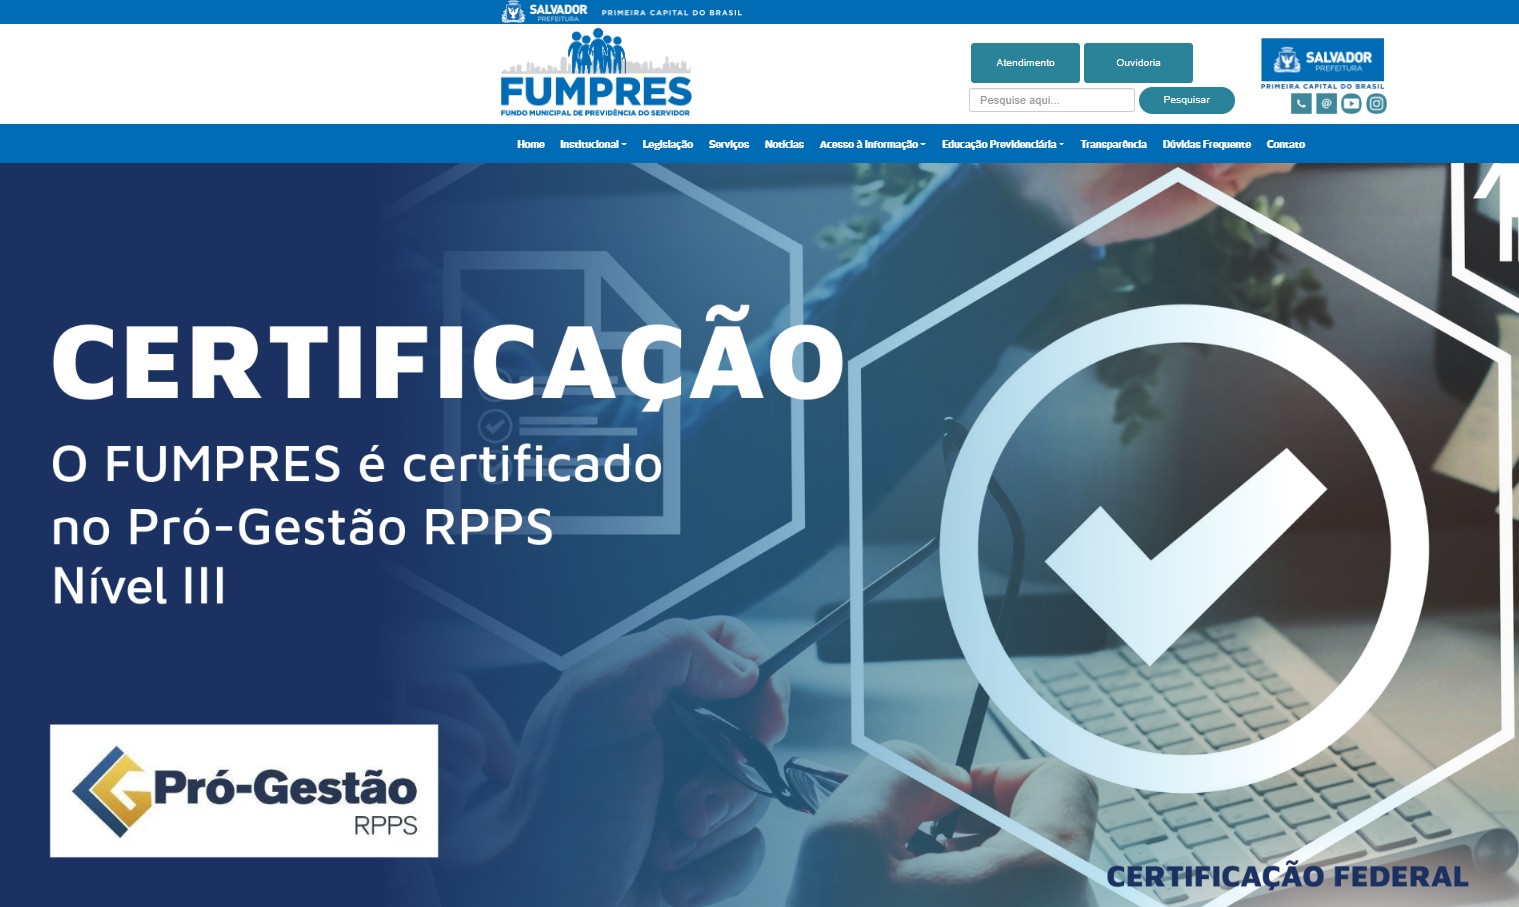 Novo site da Fumpres oferece dinâmica e agilidade para servidores de Salvador